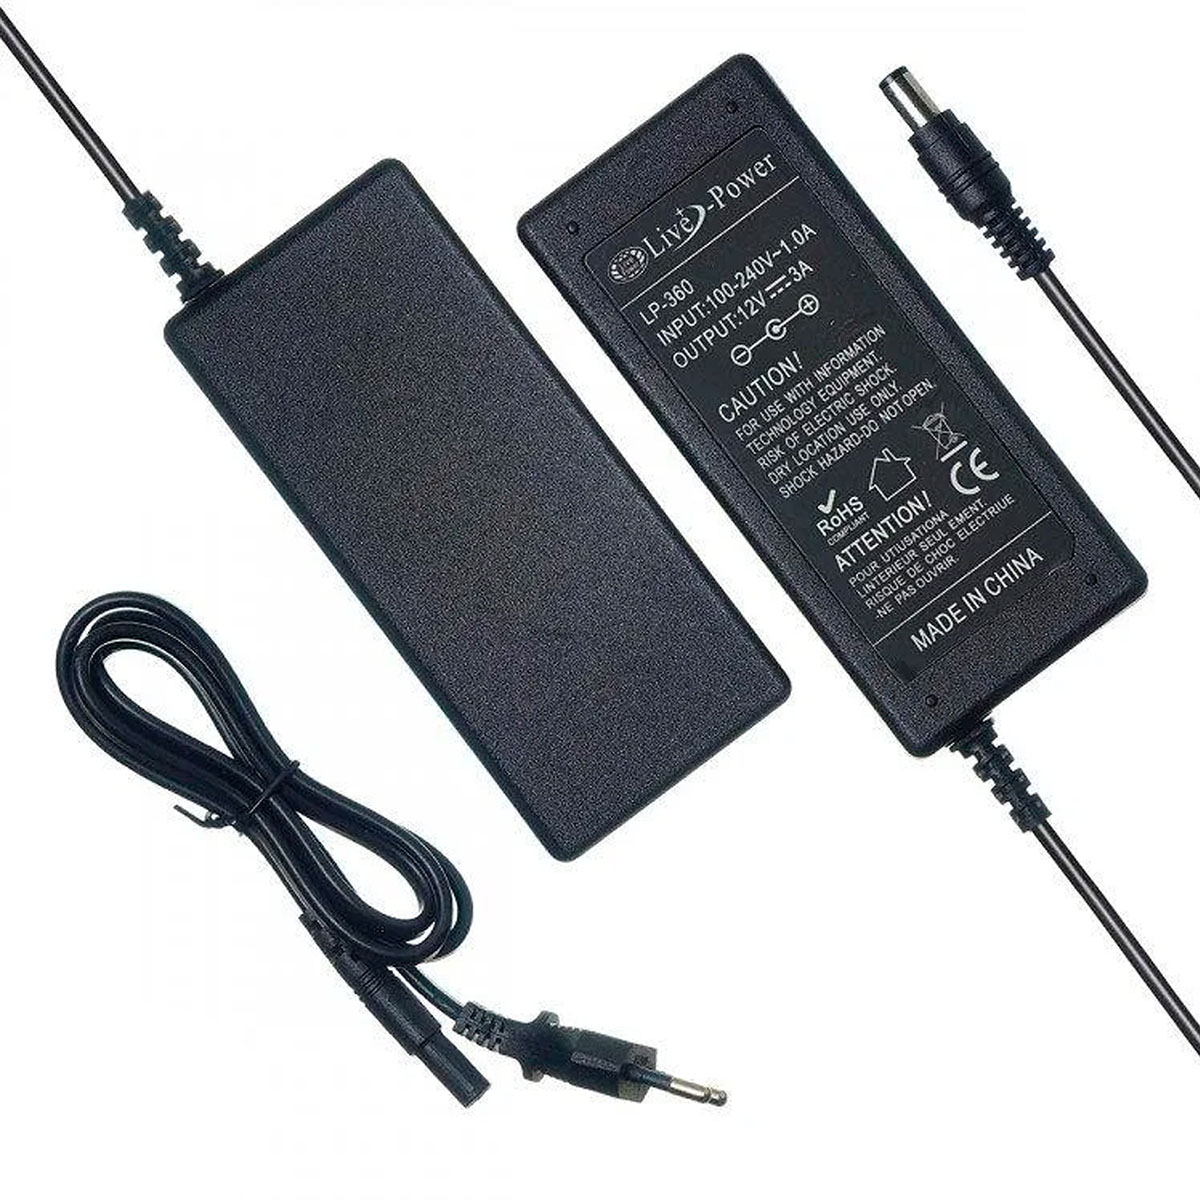 Блок питания универсальный Live-Power LP360, 12V-3A, штекер 5.5 на 2.5 мм, цвет черный